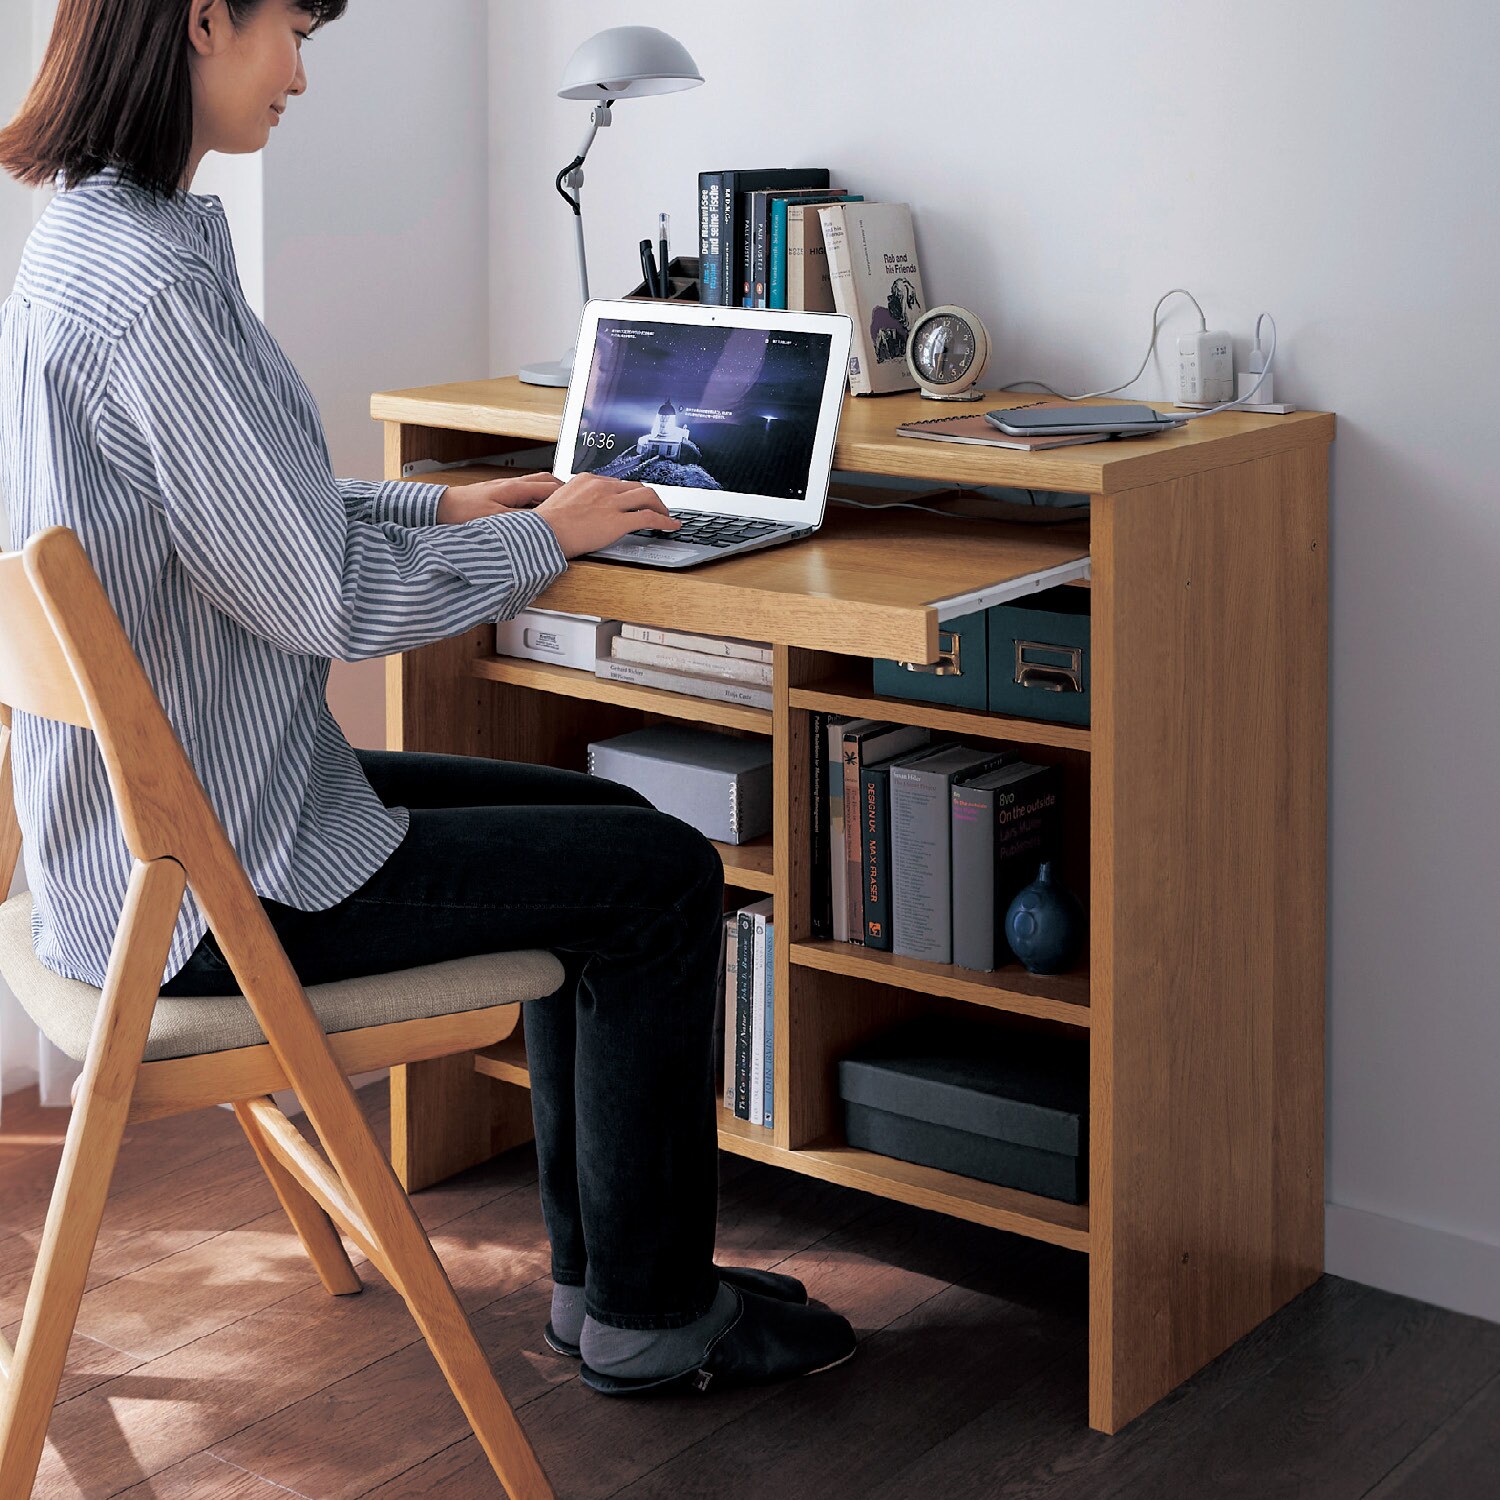 【ベルメゾン】作業に便利なスライドテーブル付き腰高本棚